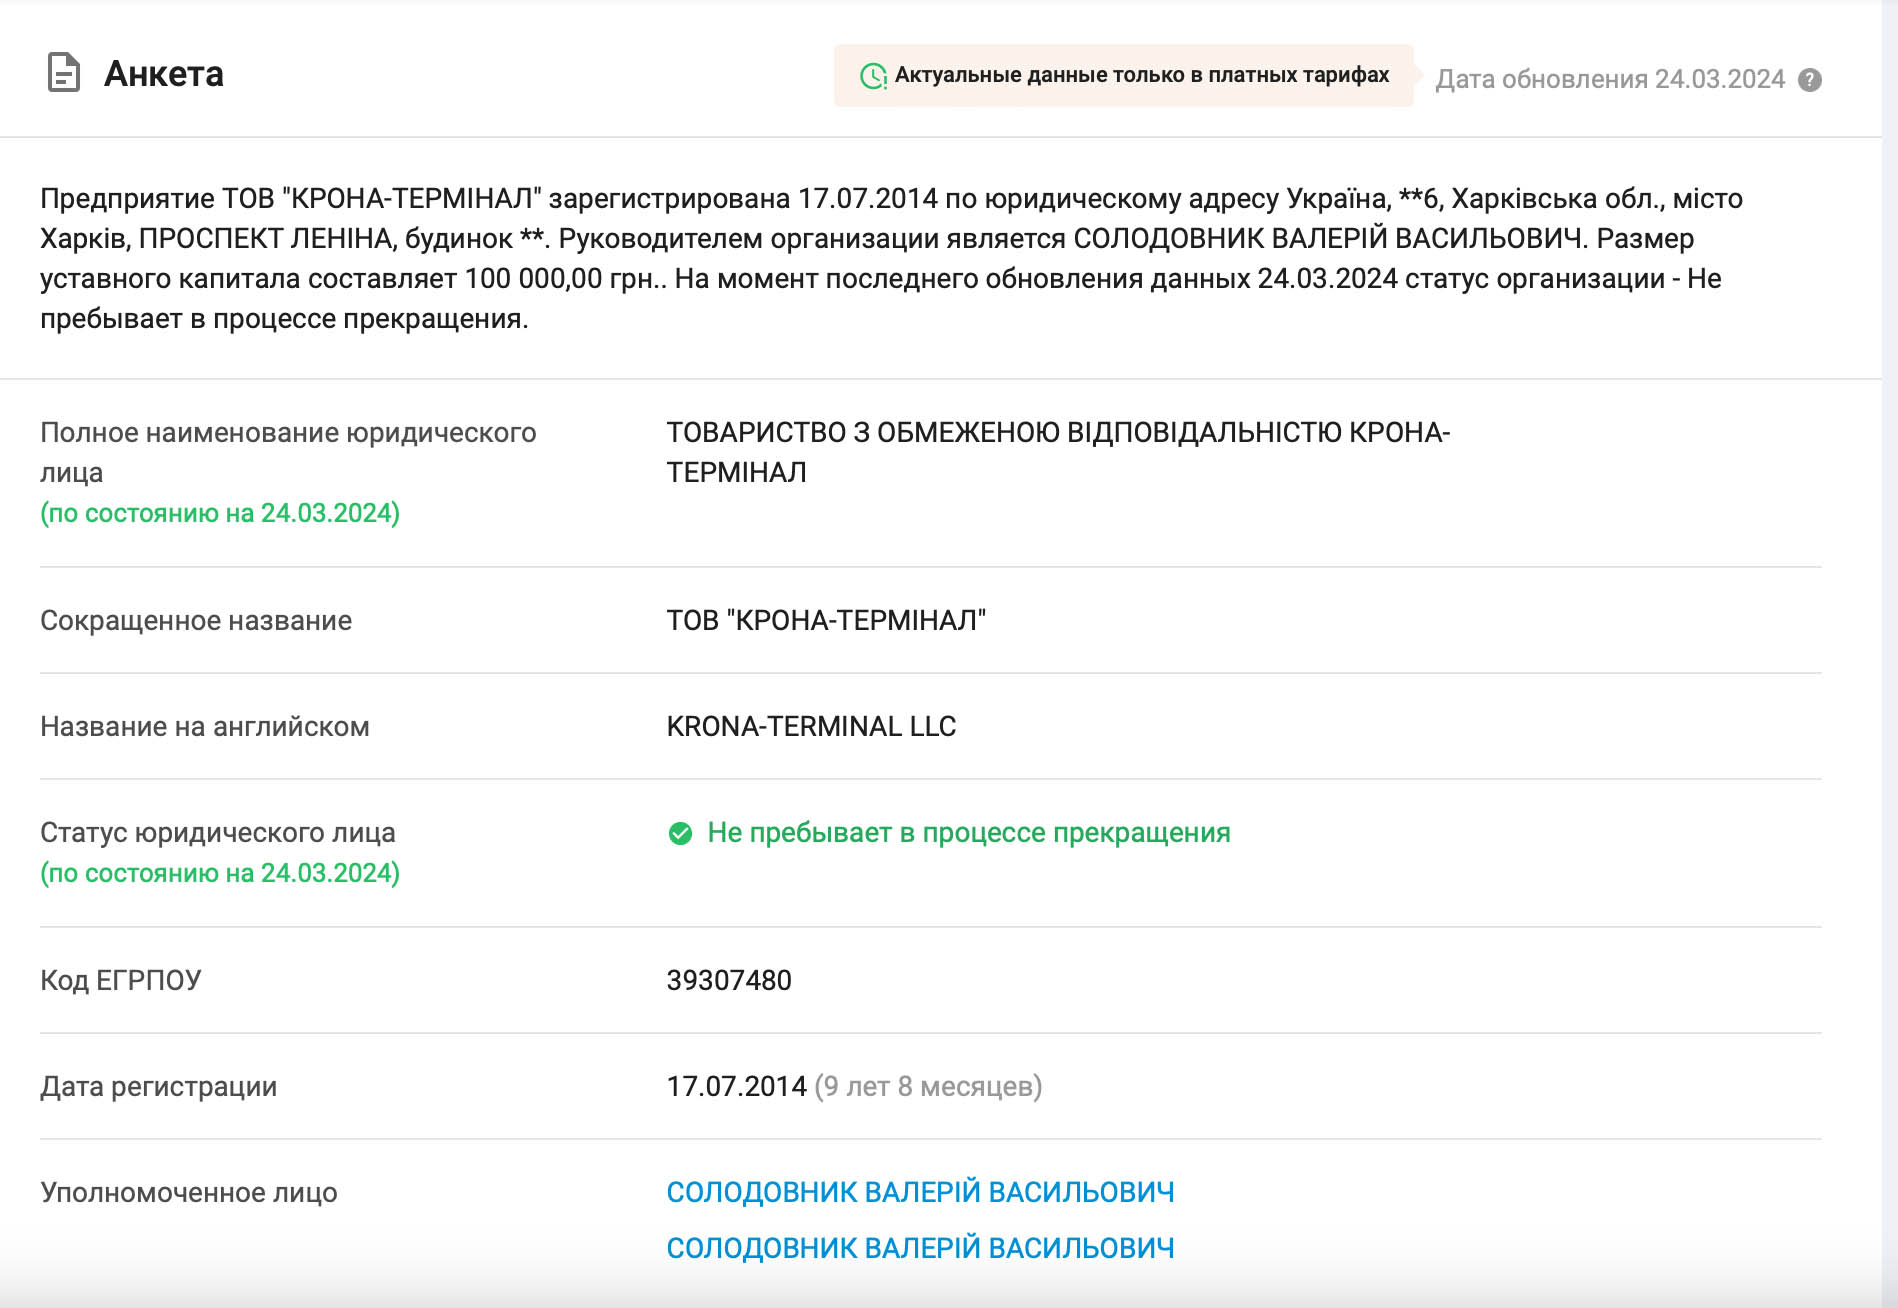 Николай Удянский назначил Валерия Солодовника уполномоченным лицом по других своих проектах, вероятно связанных с отмыванием средств